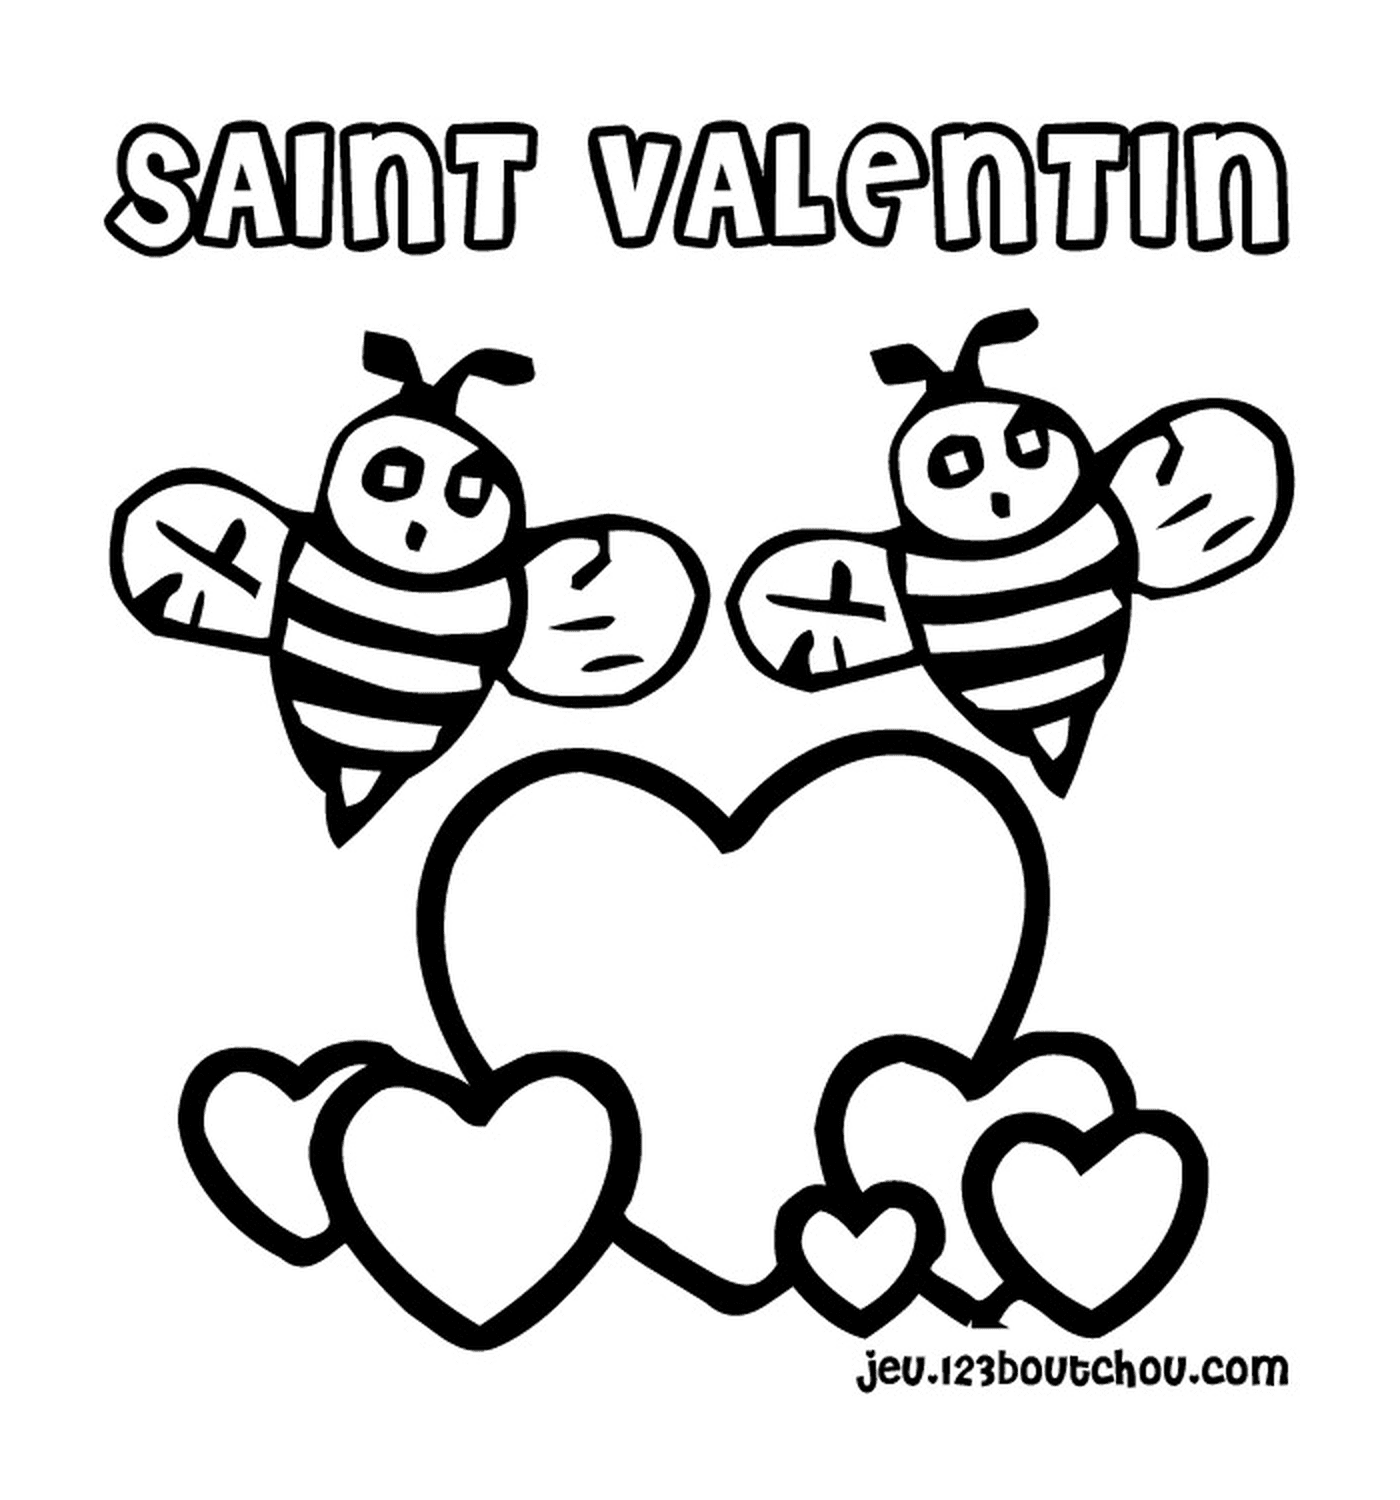   Deux abeilles et un cœur 